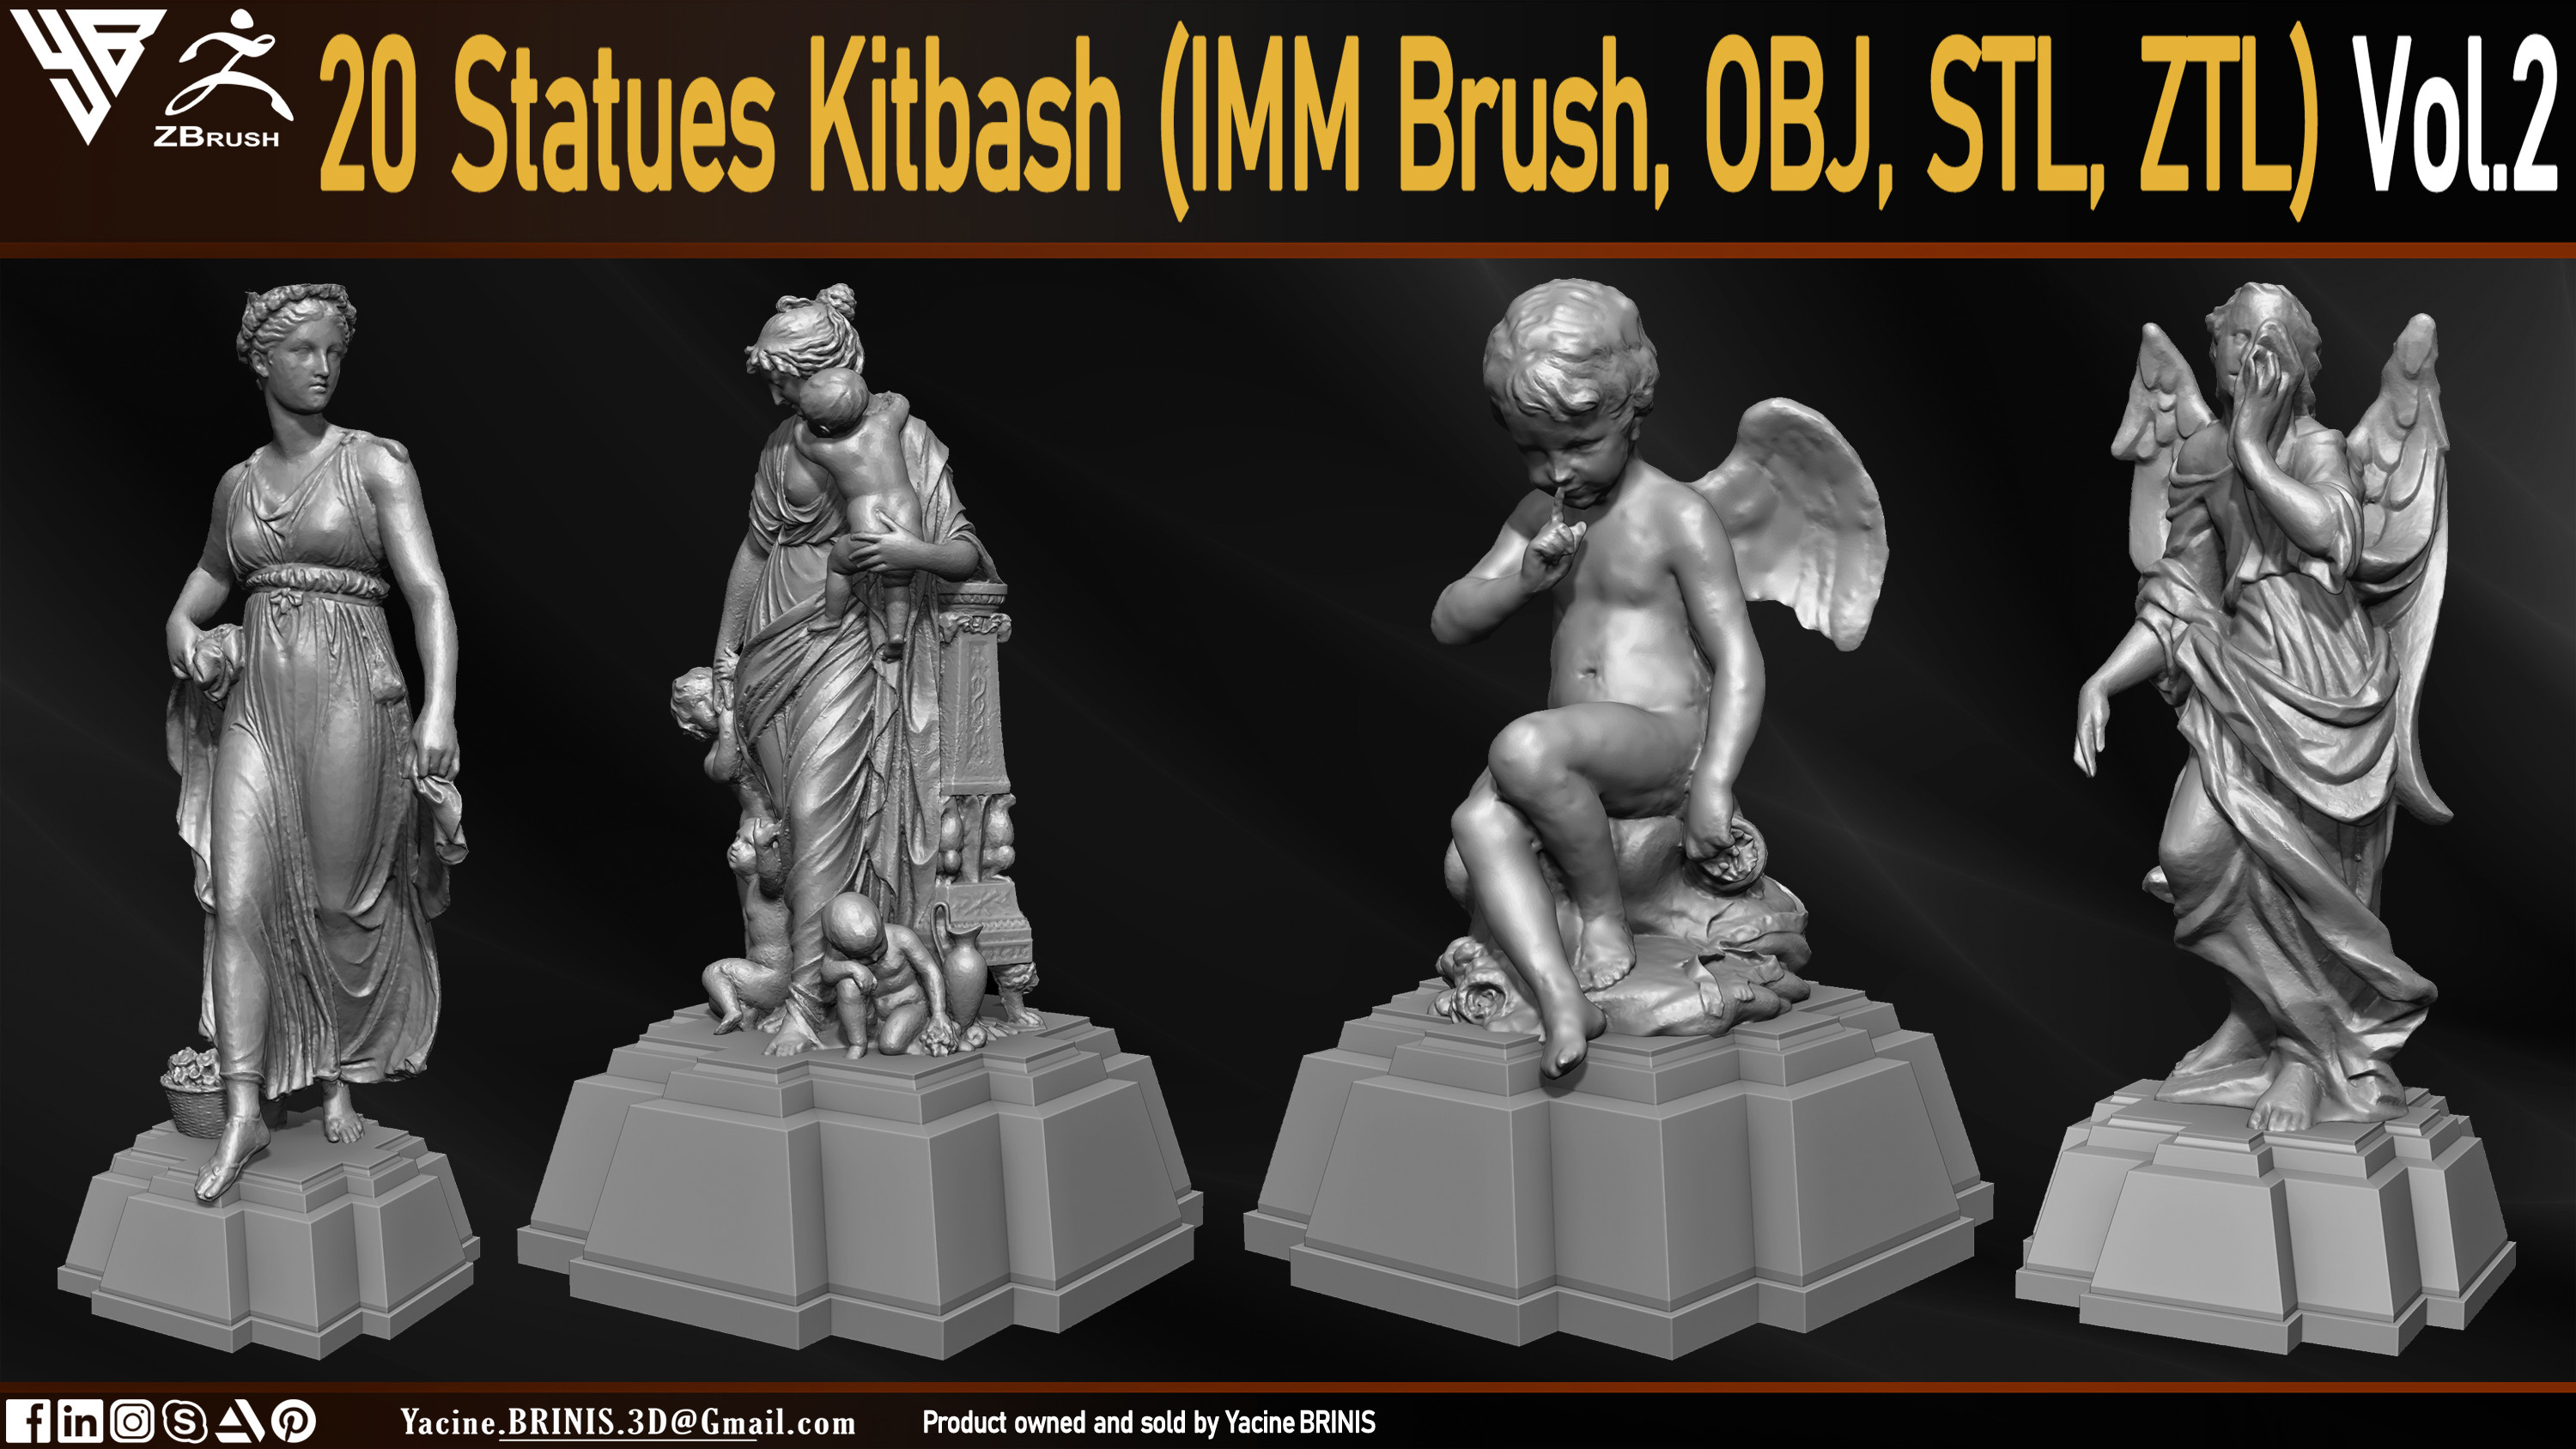 Statues Kitbash by yacine brinis Set 09